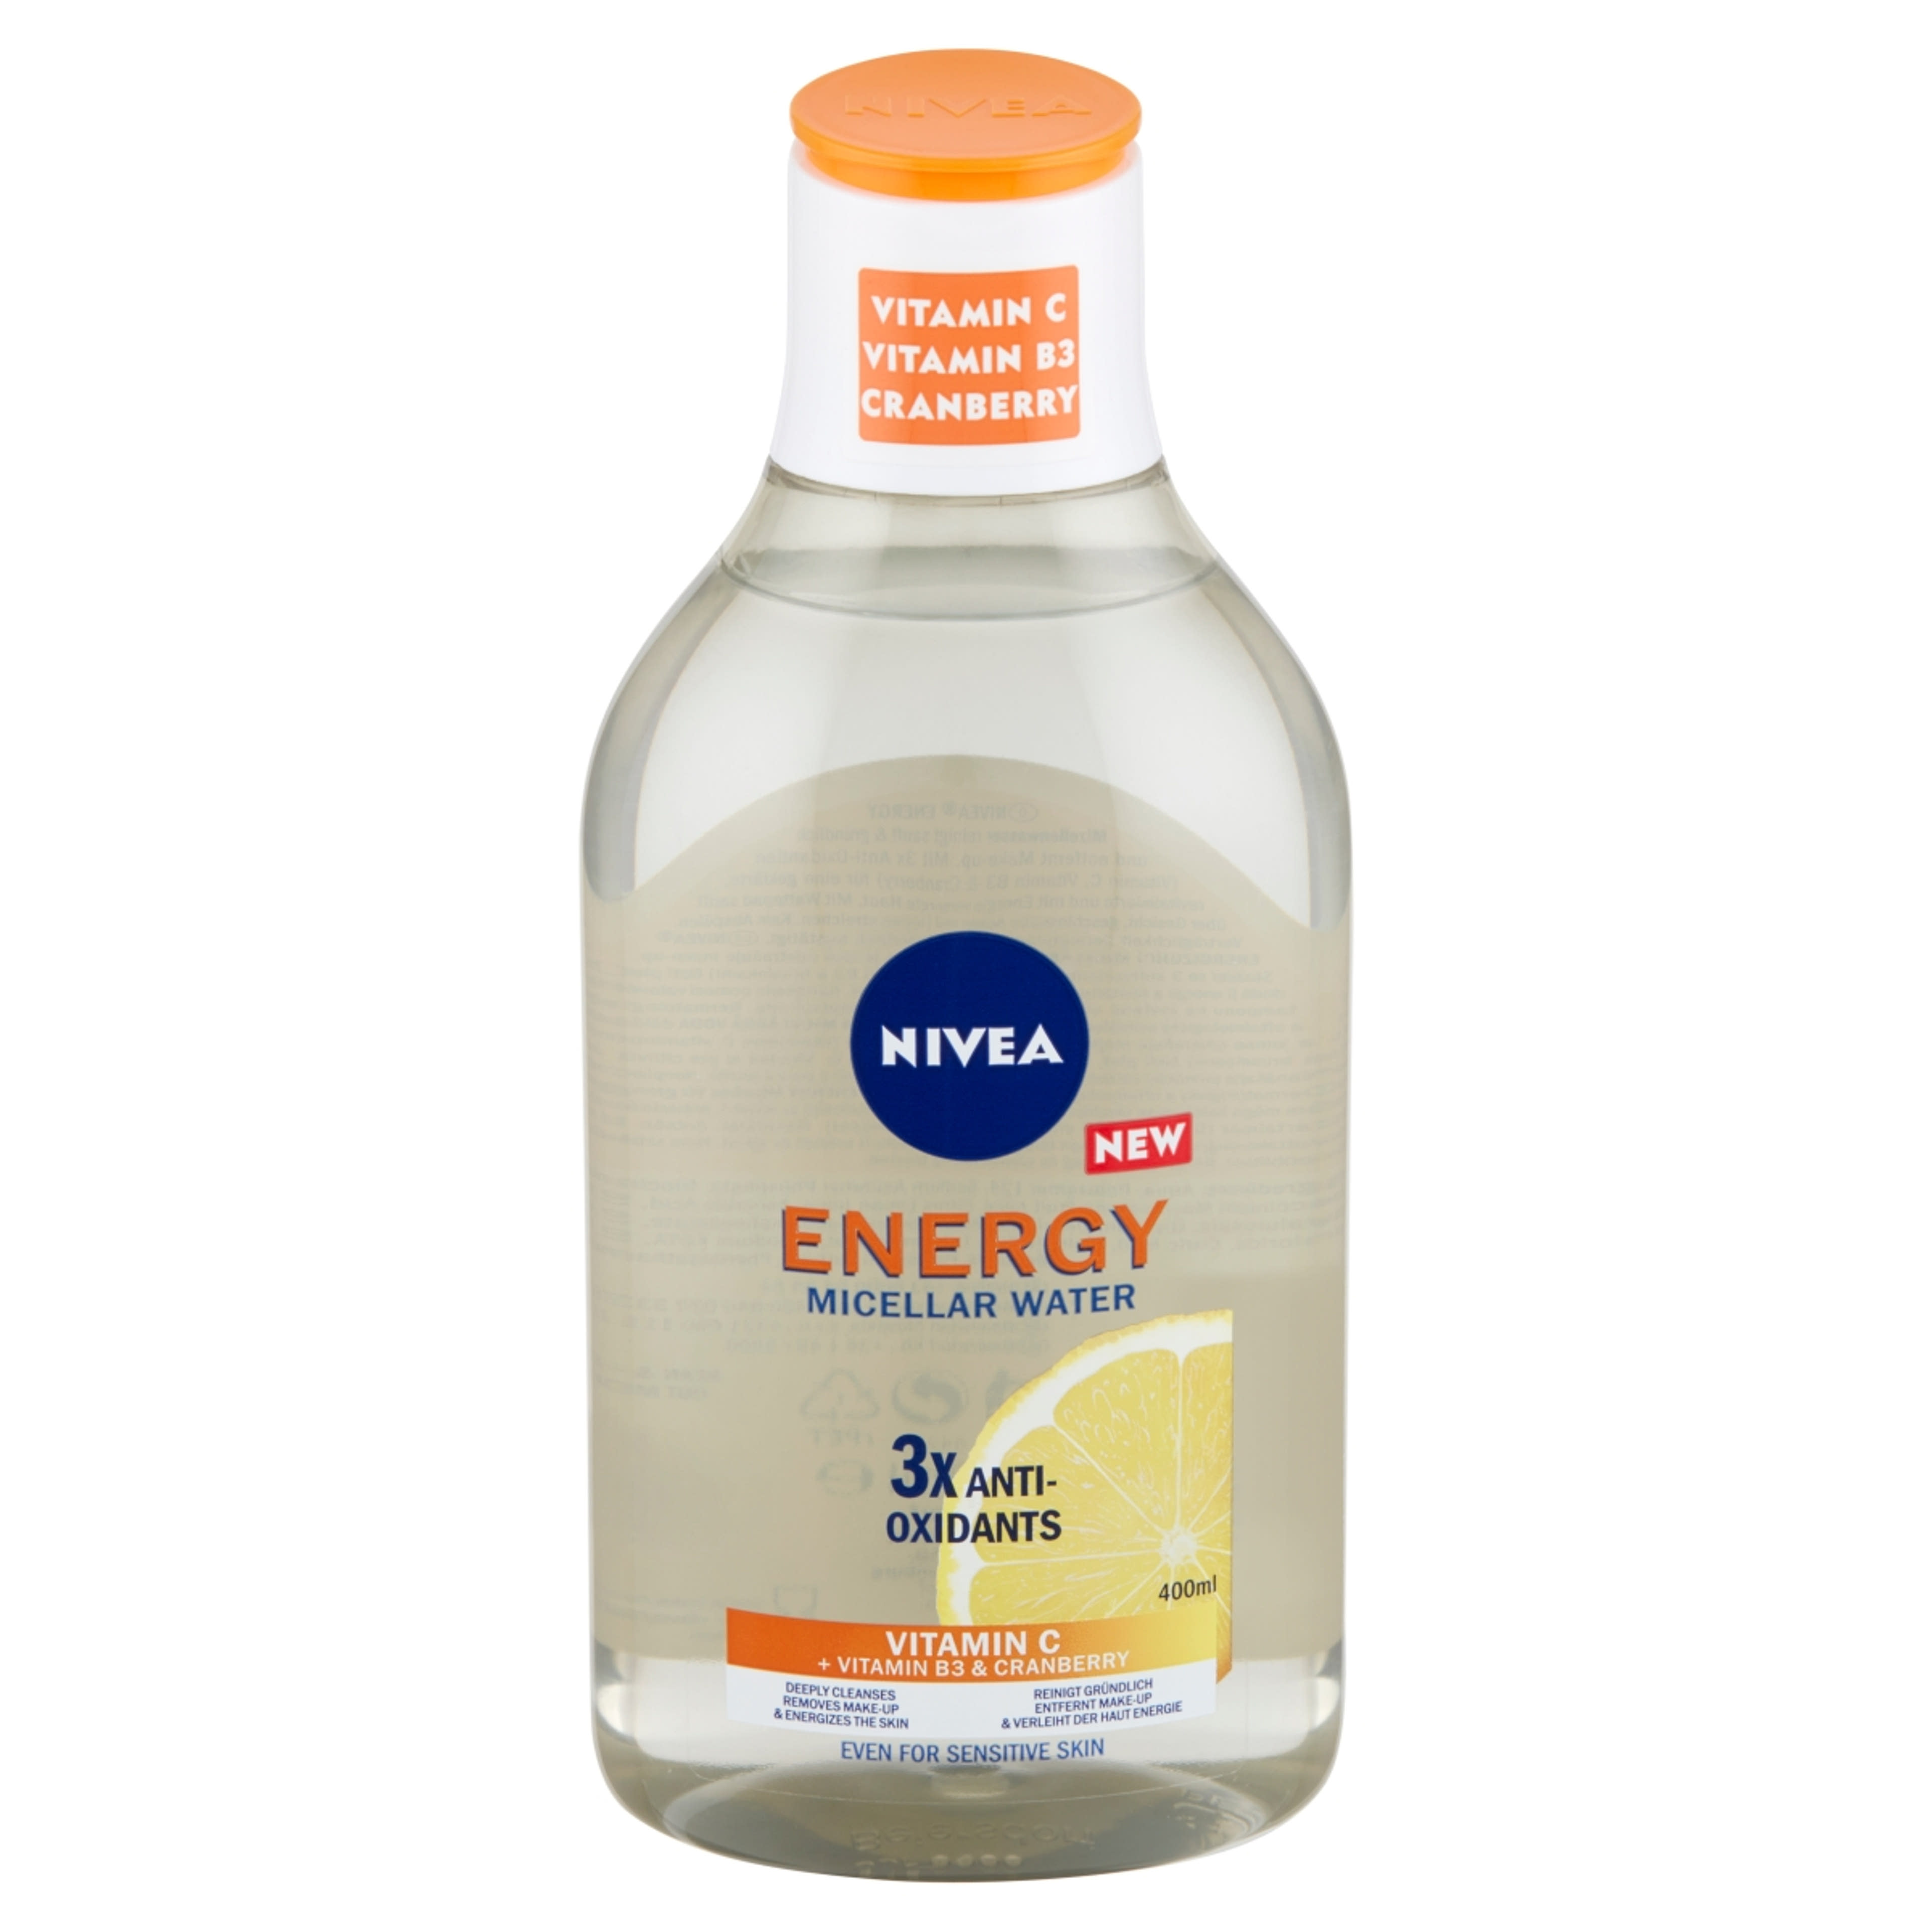 Nivea Energy micellás víz, c-vitaminnal - 400 ml-6